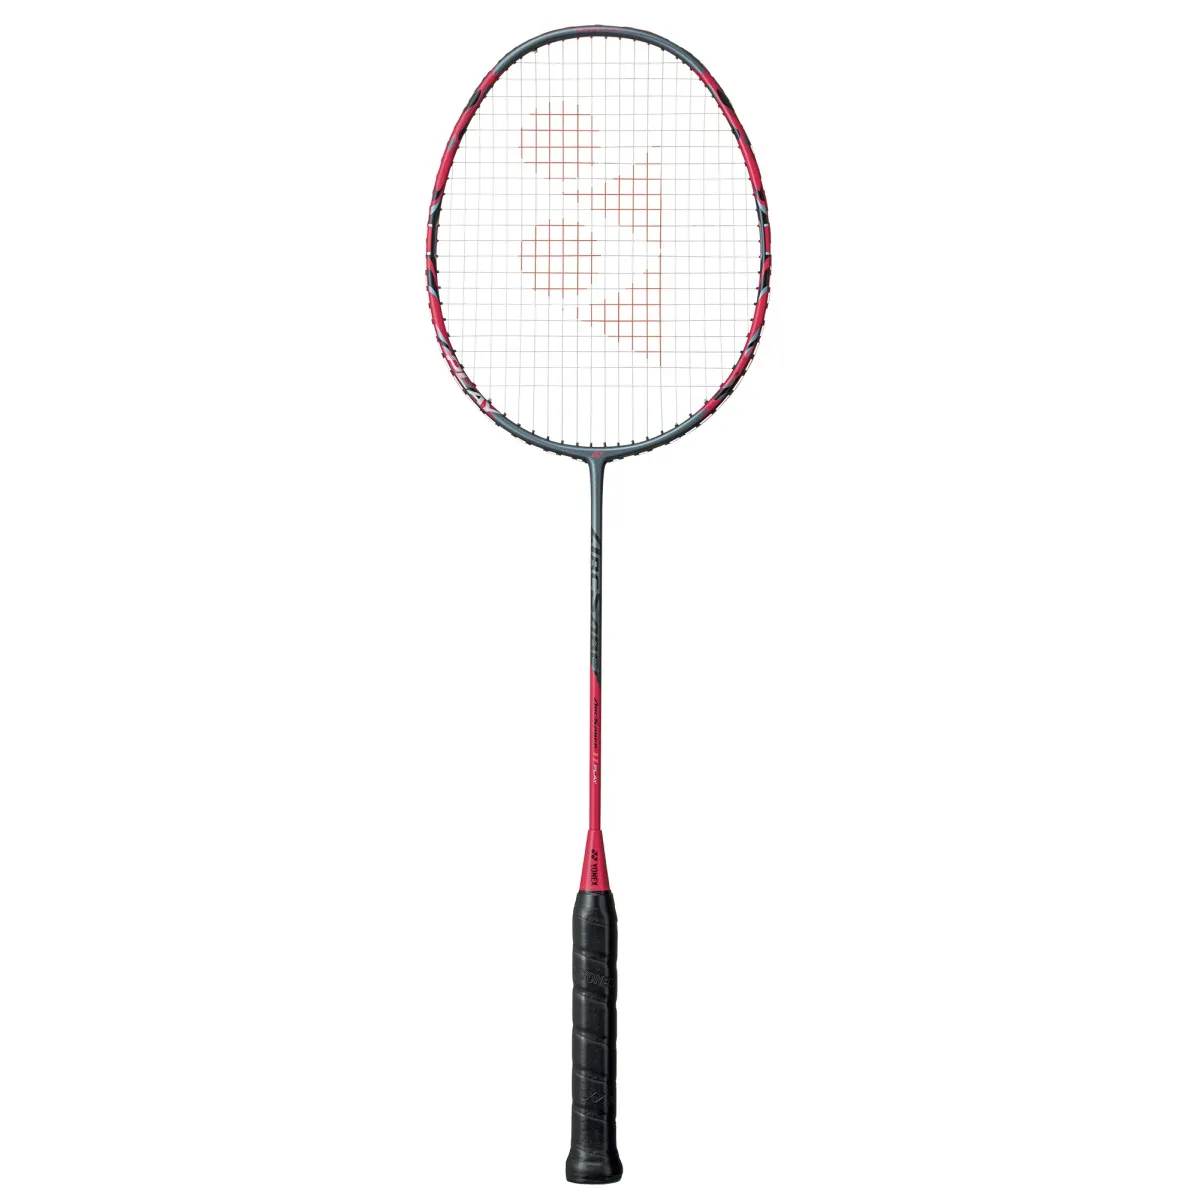 Buy Yonex Arcsaber 11 PLAY Badminton Racket